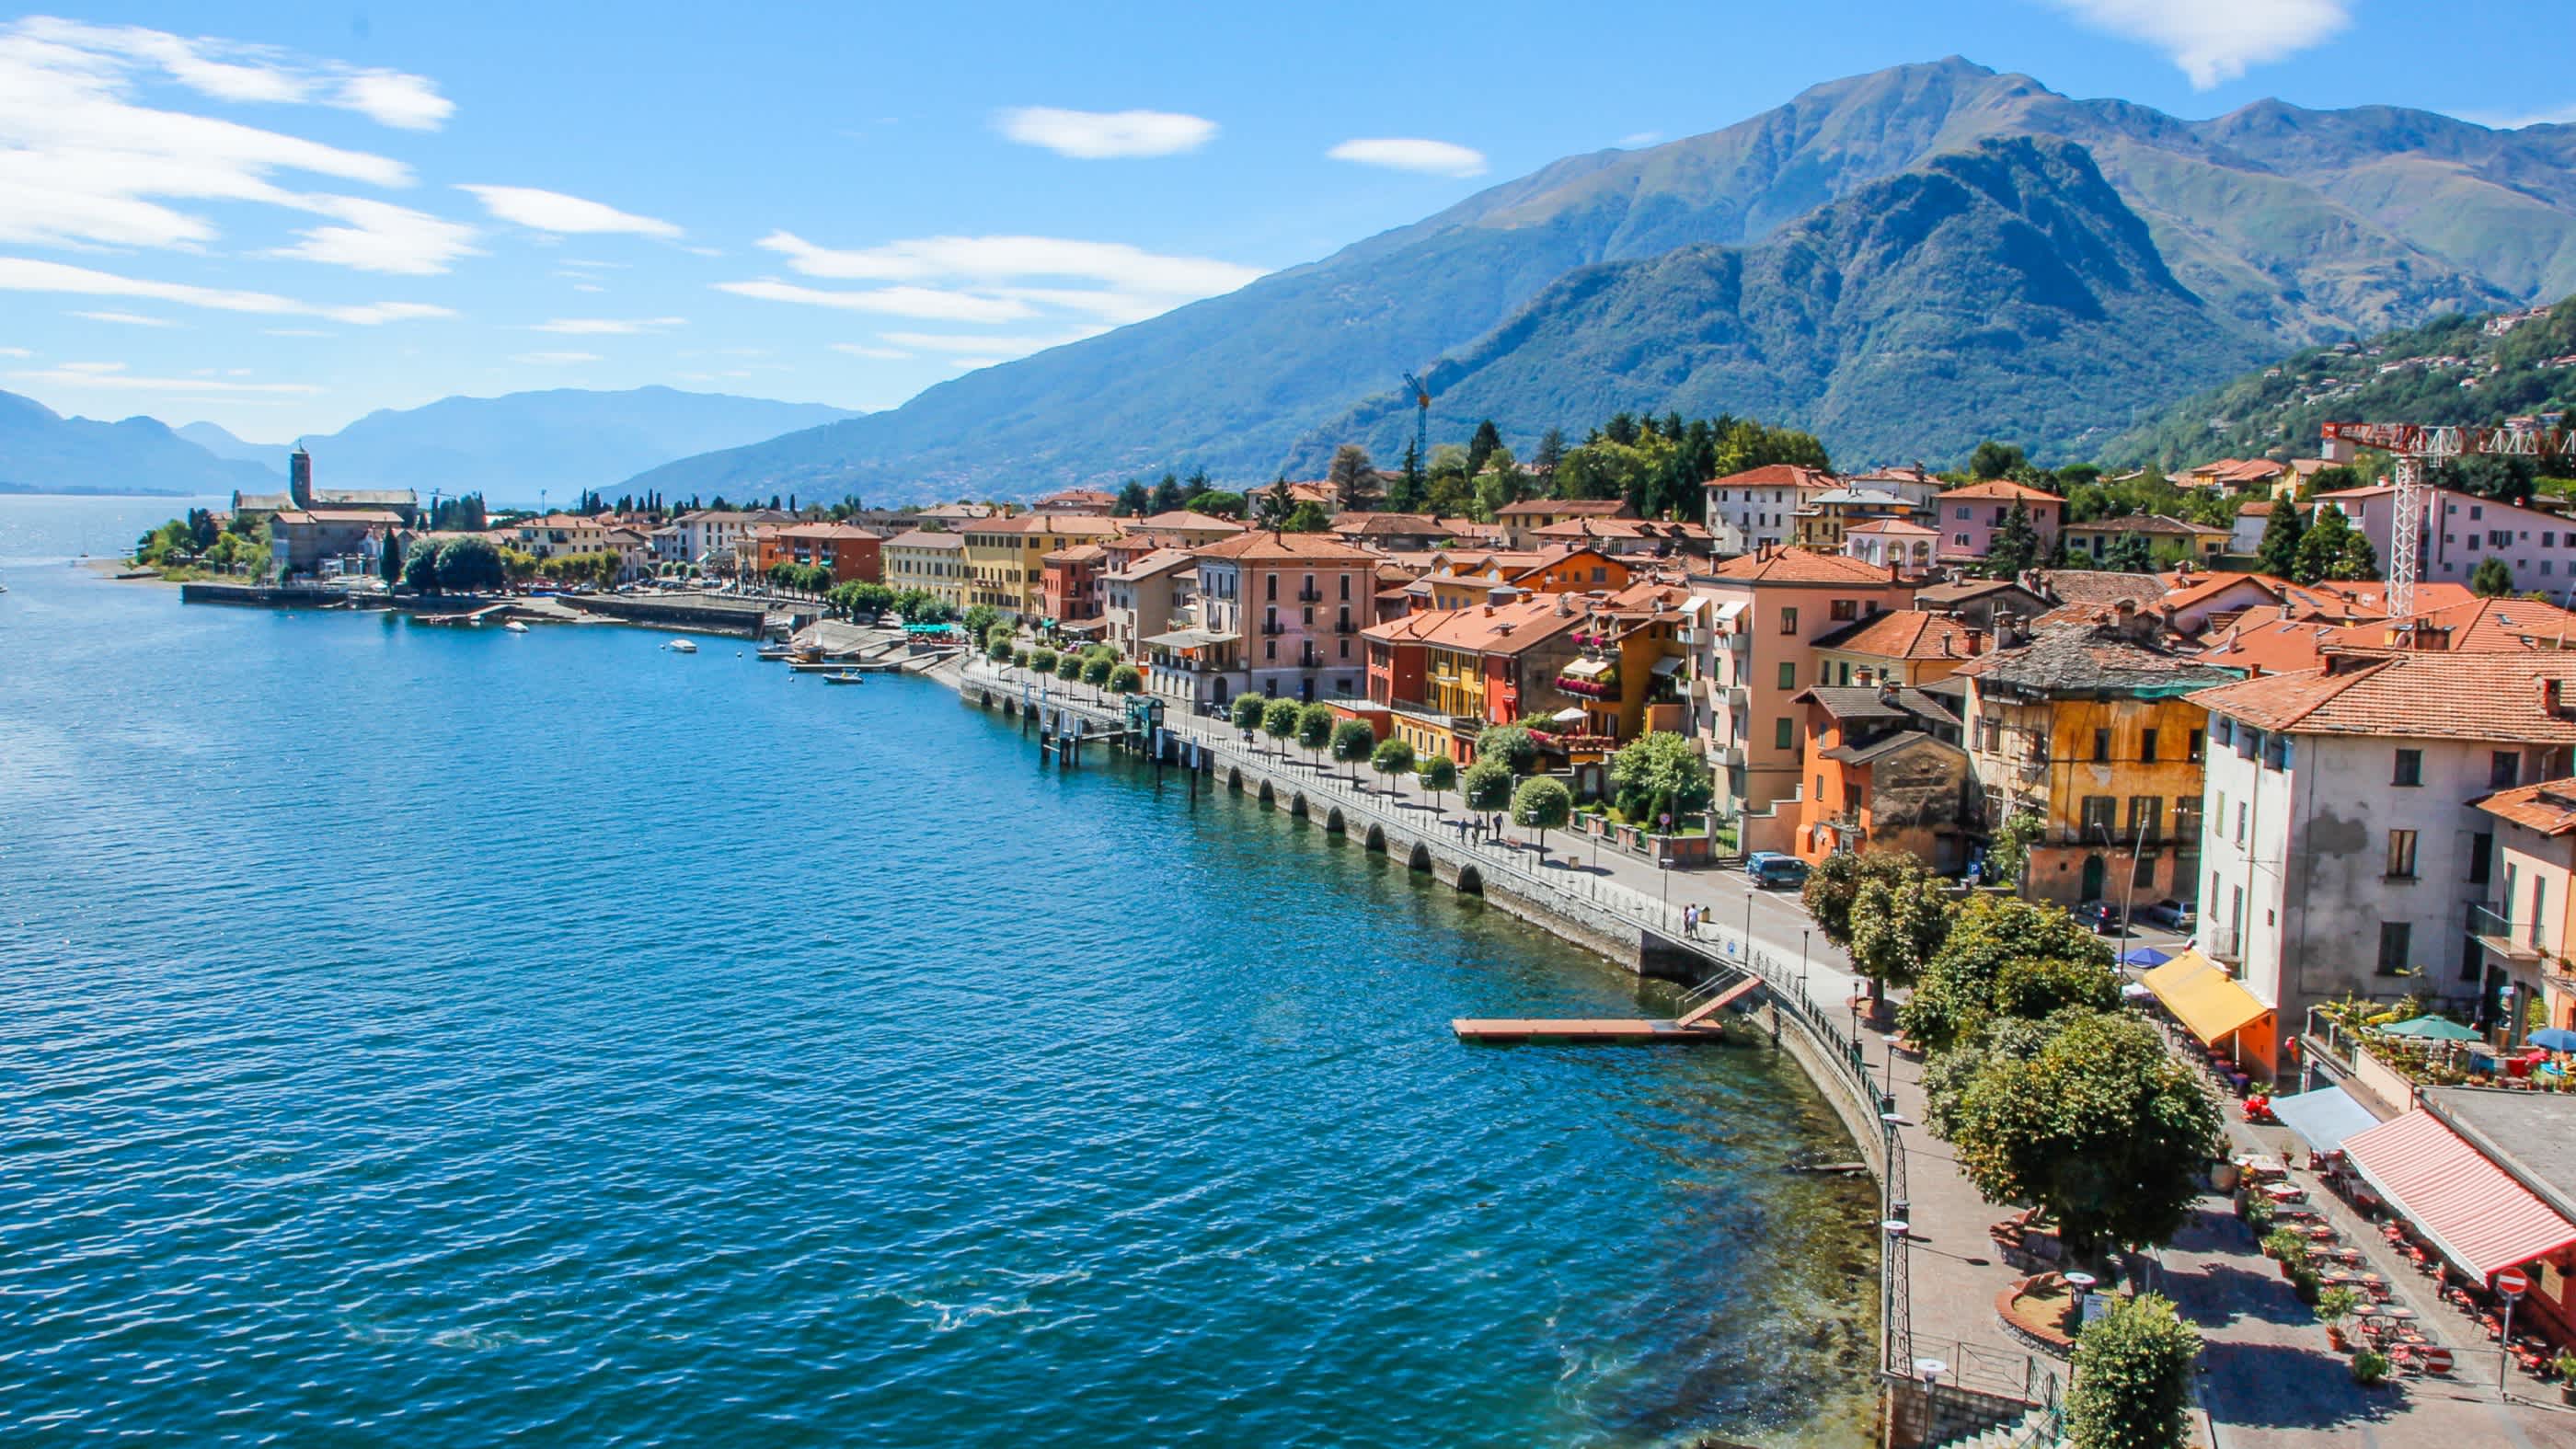 Vue d'une ville sur le lac de Côme, Lombardie, Italie.